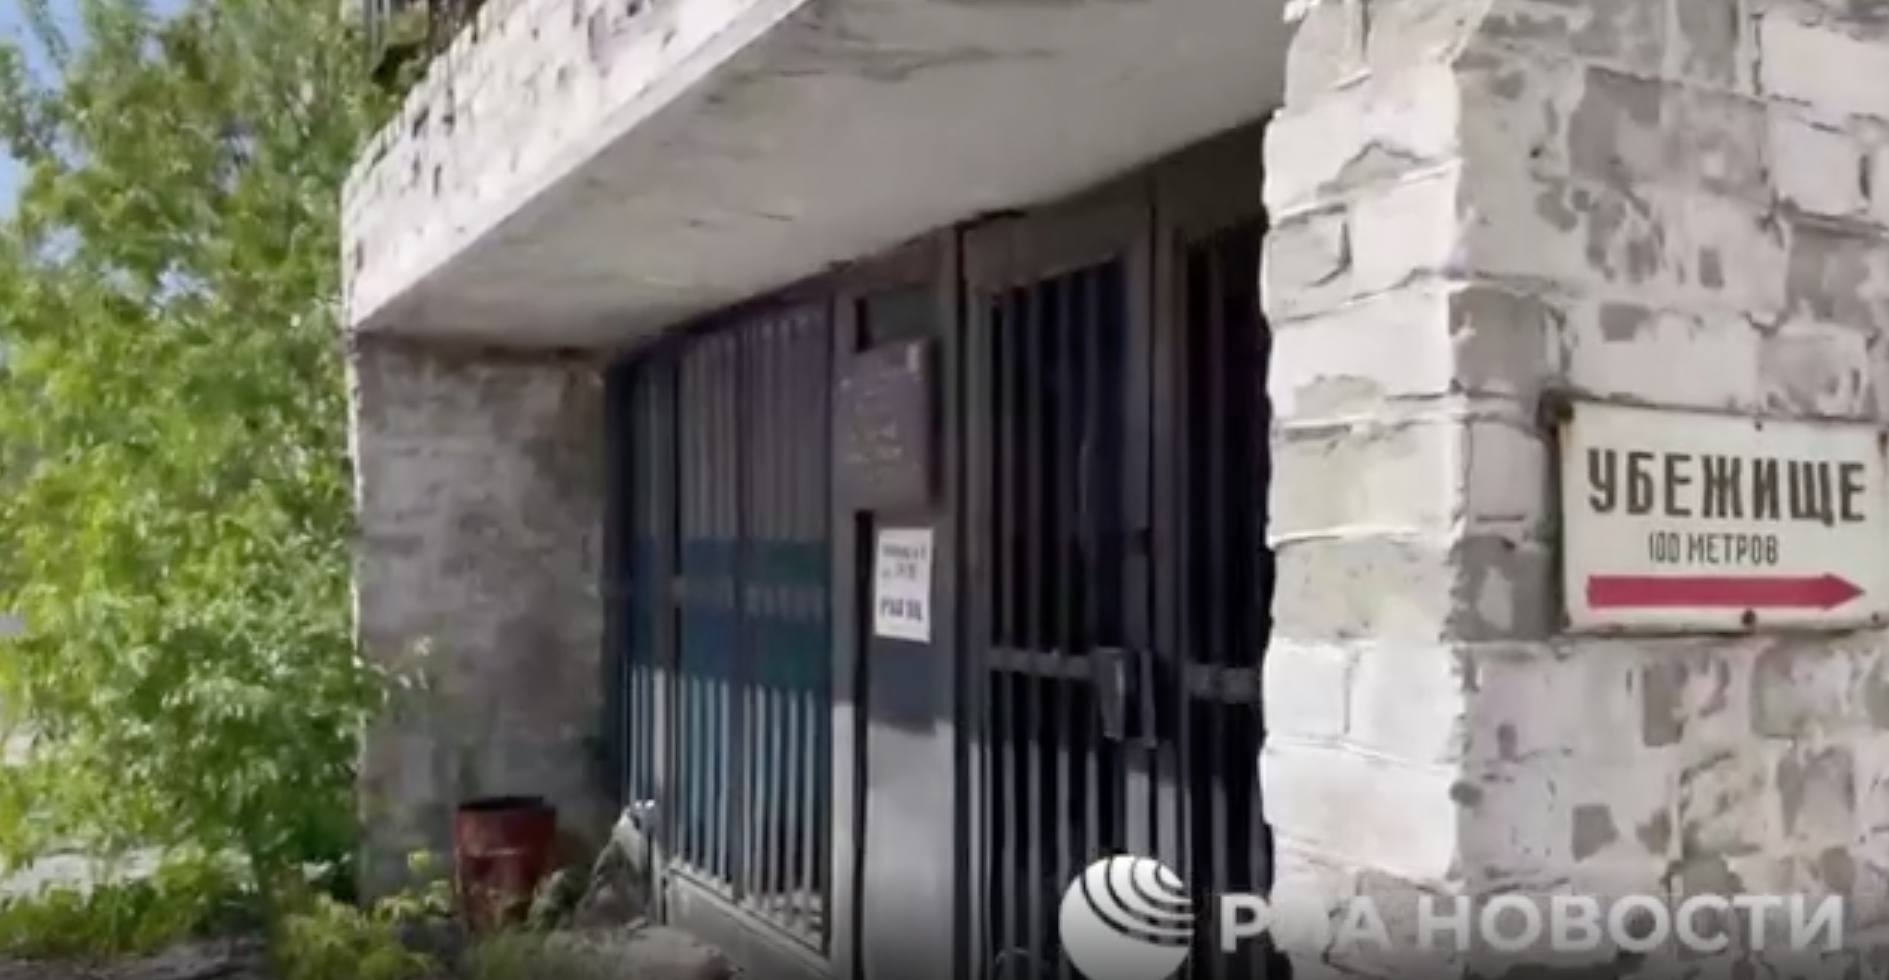 Появились кадры из бомбоубежища на территории Азовстали